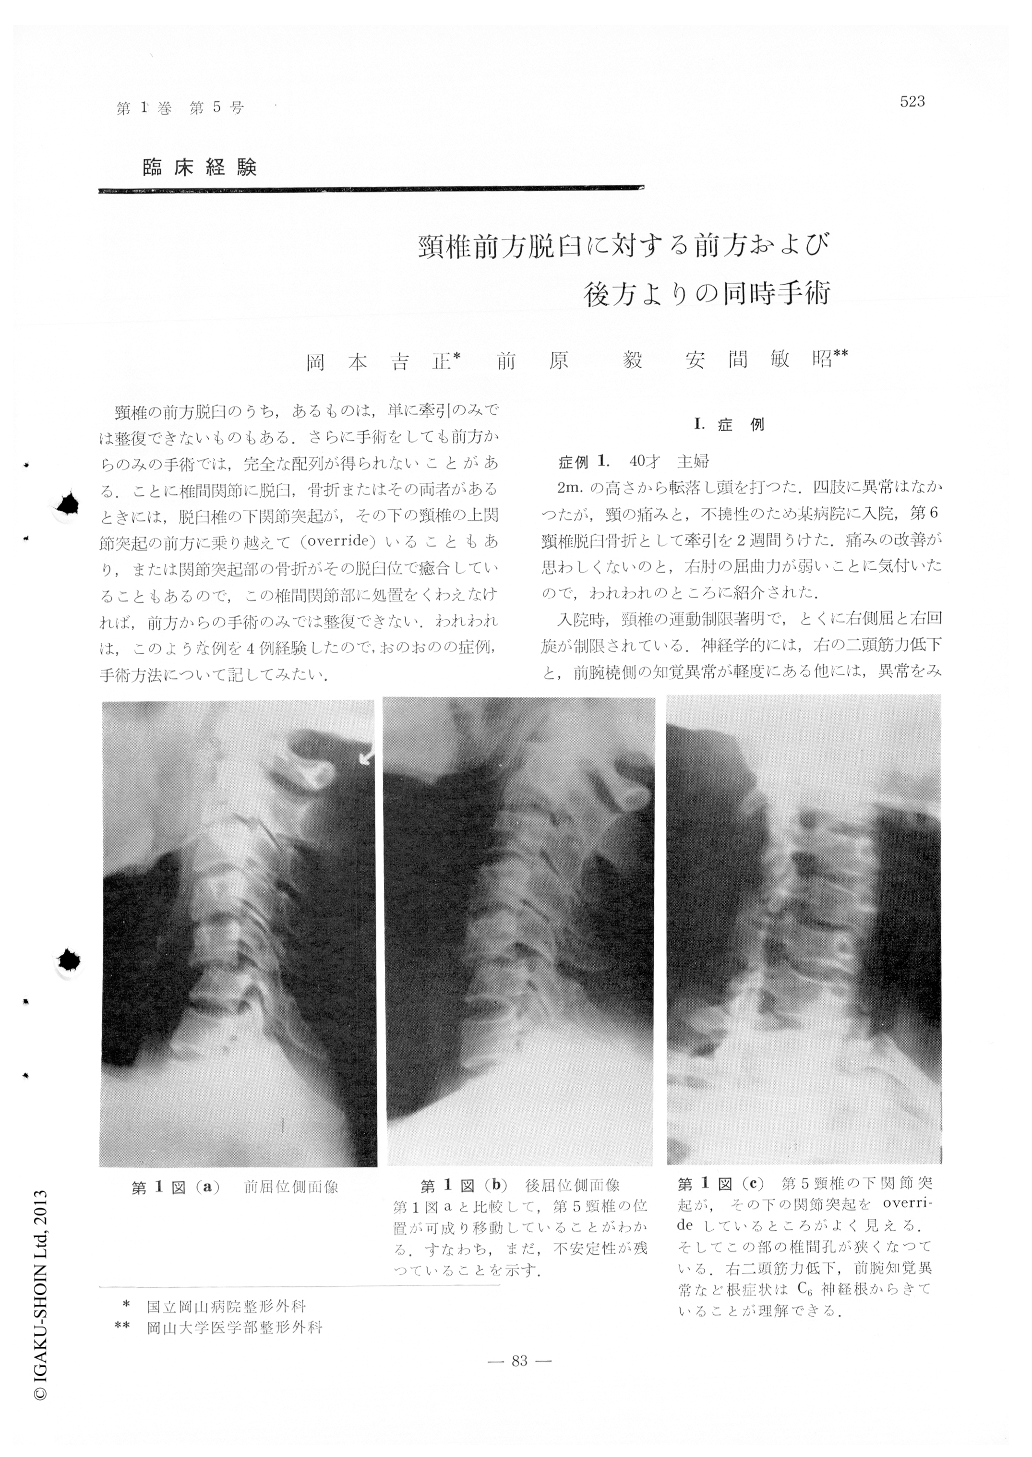 頸椎前方脱臼に対する前方および後方よりの同時手術 臨床整形外科 1巻5号 医書 Jp